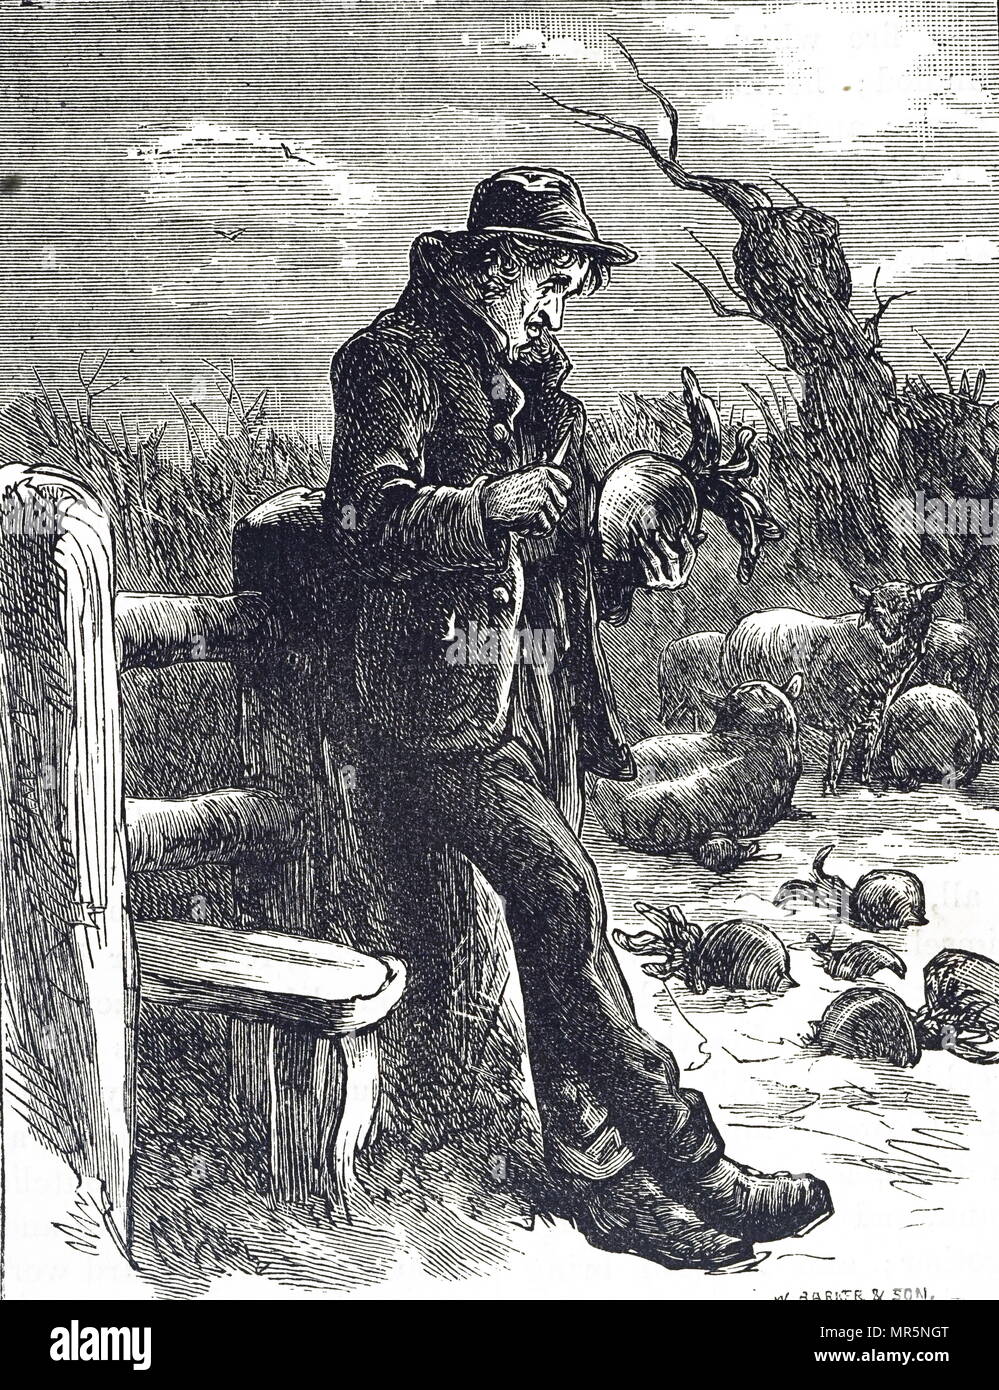 Kupferstich mit der Darstellung eines hungernden Landarbeiter essen eine roh Rübe, die im Feld als Futter für Schafe gebracht worden ist. Vom 19. Jahrhundert Stockfoto